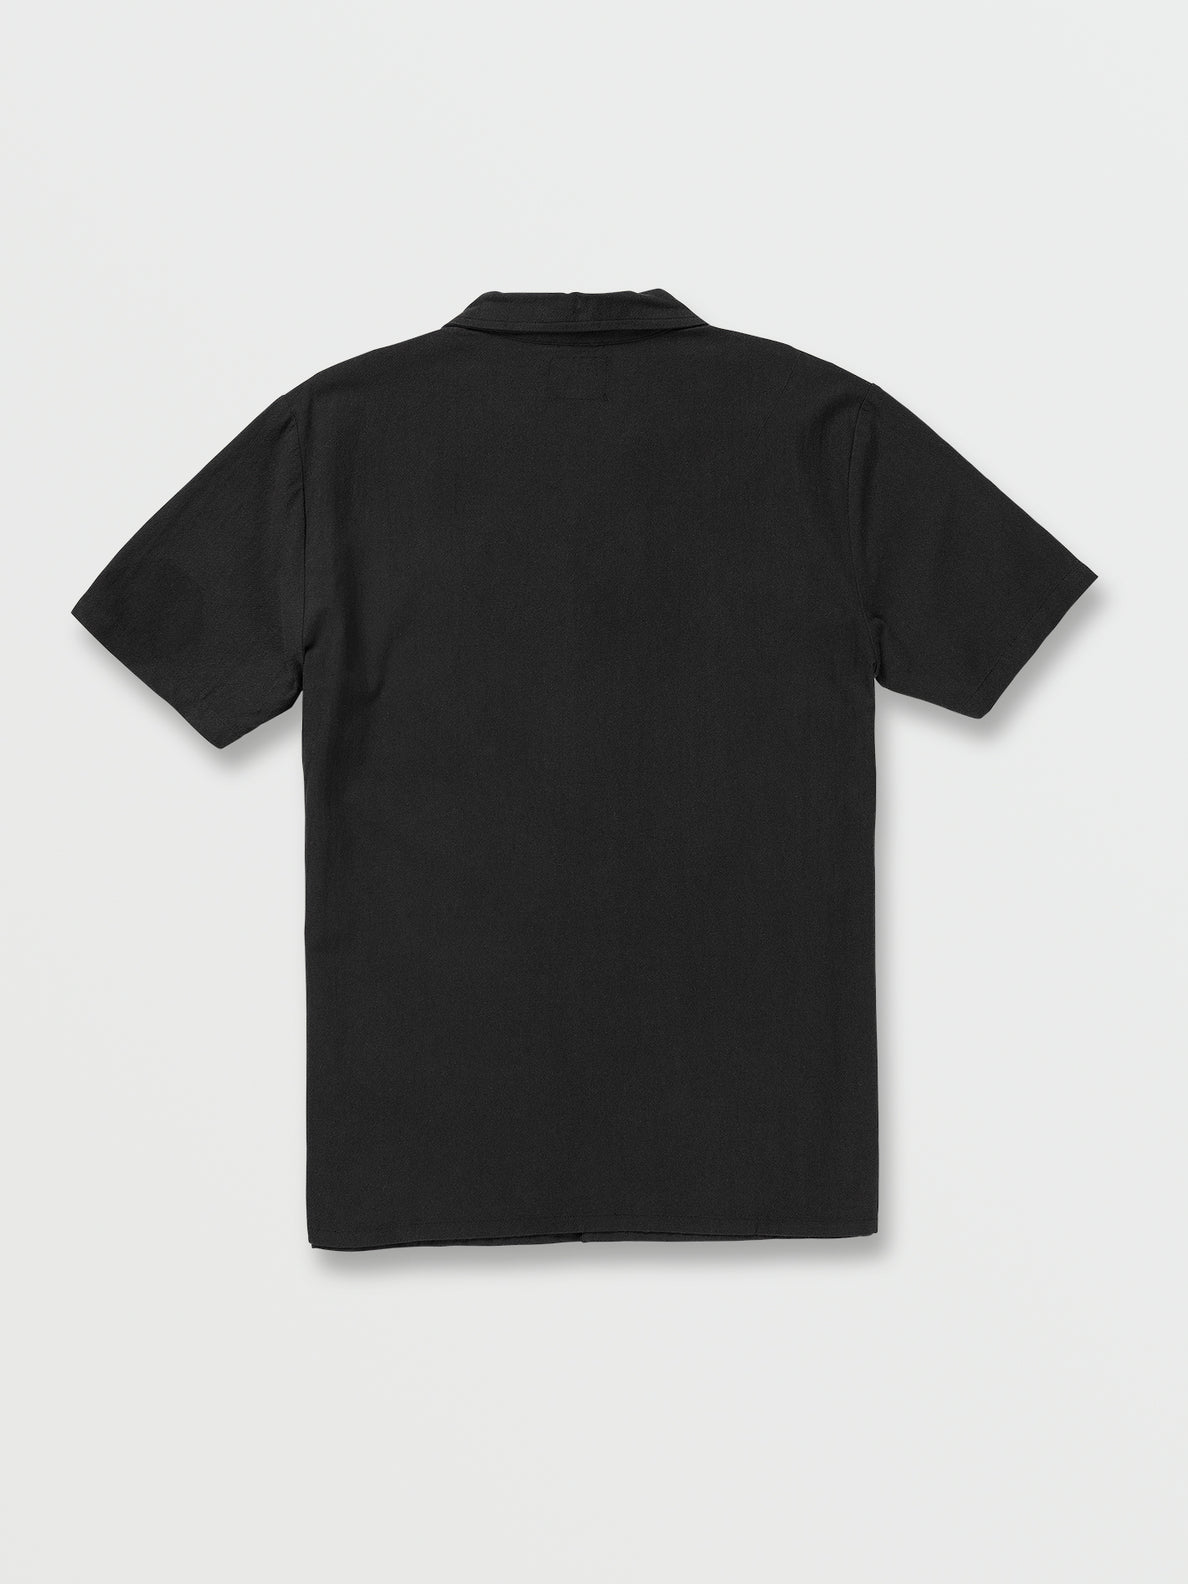 Beaumate Short Sleeve Shirt - Black (A0432206_BLK) [B]